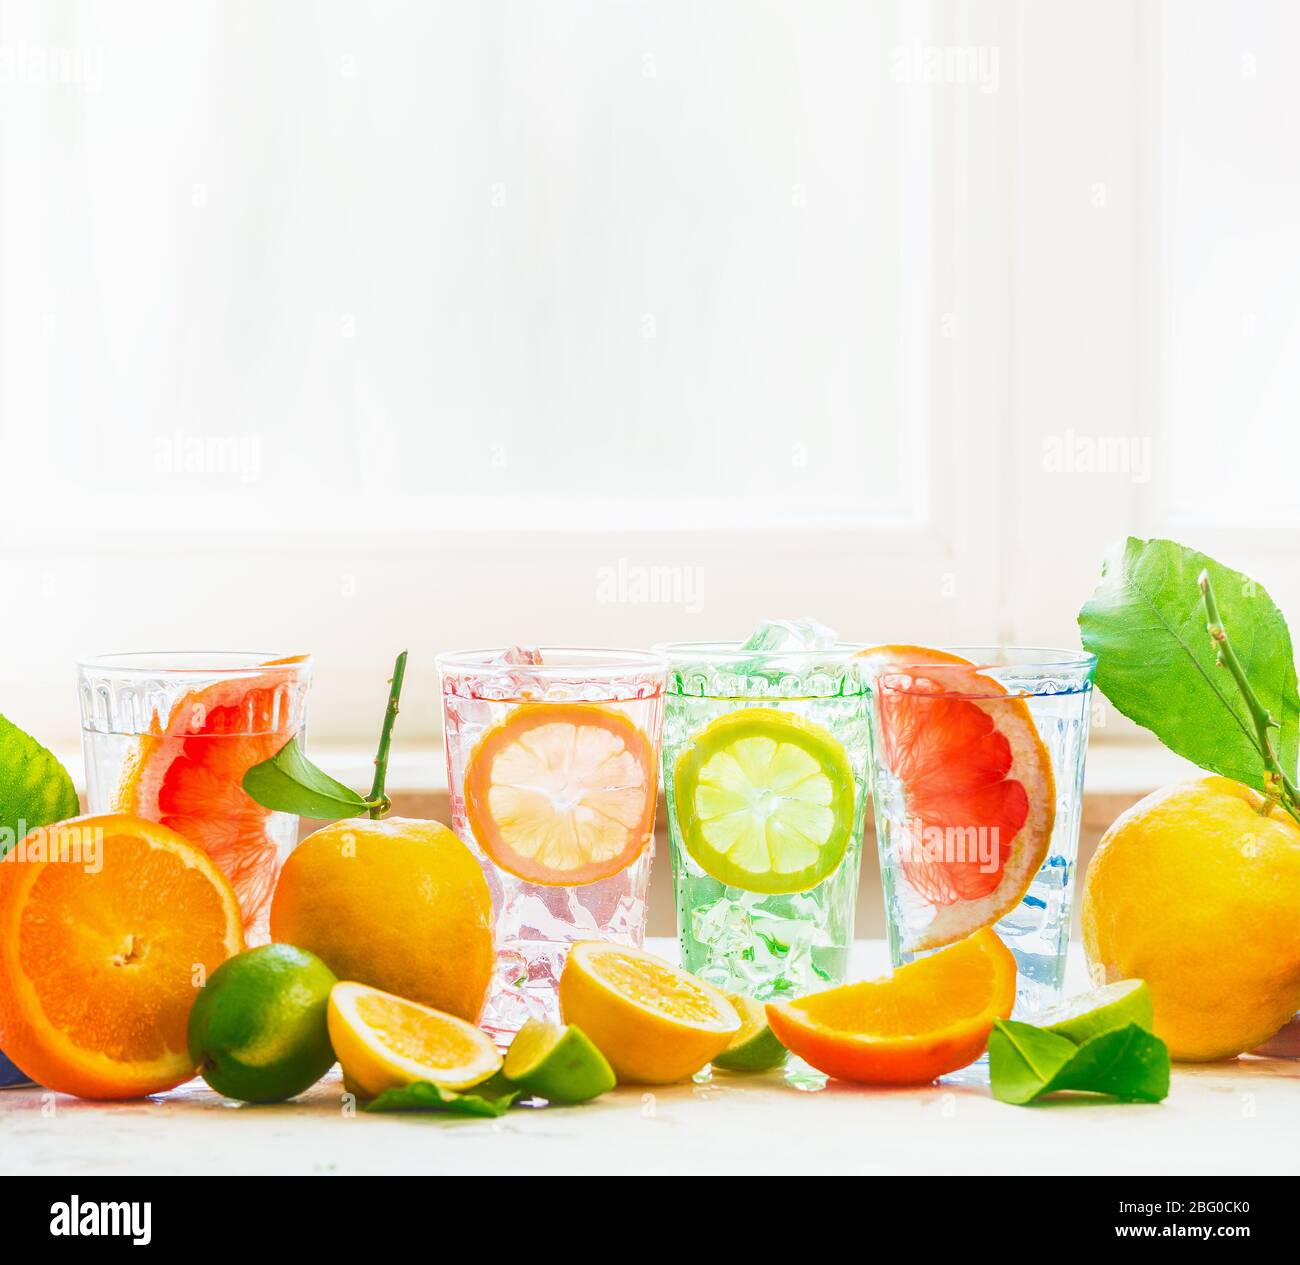 Sommerfrische Getränke Party im Sonnenlicht auf weißem Tisch mit verschiedenen Zitrusfrüchten: Zitrone, Orange, Limette und Grapefruit auf hellen Fensterhintergrund. H Stockfoto